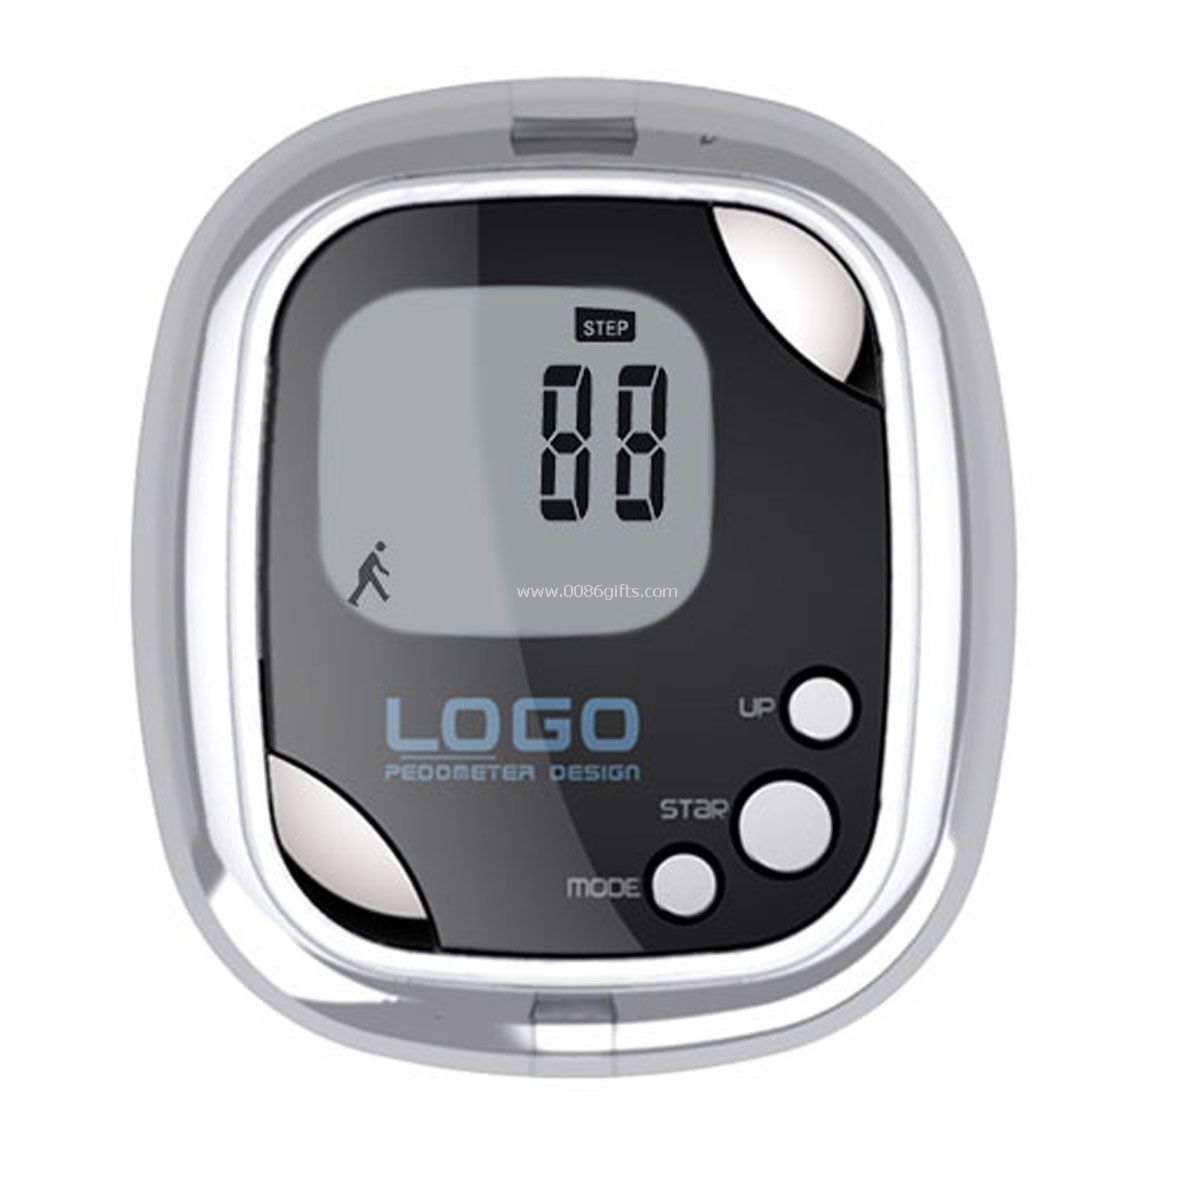 Detector de índice gordo pedômetro/corpo/relógio